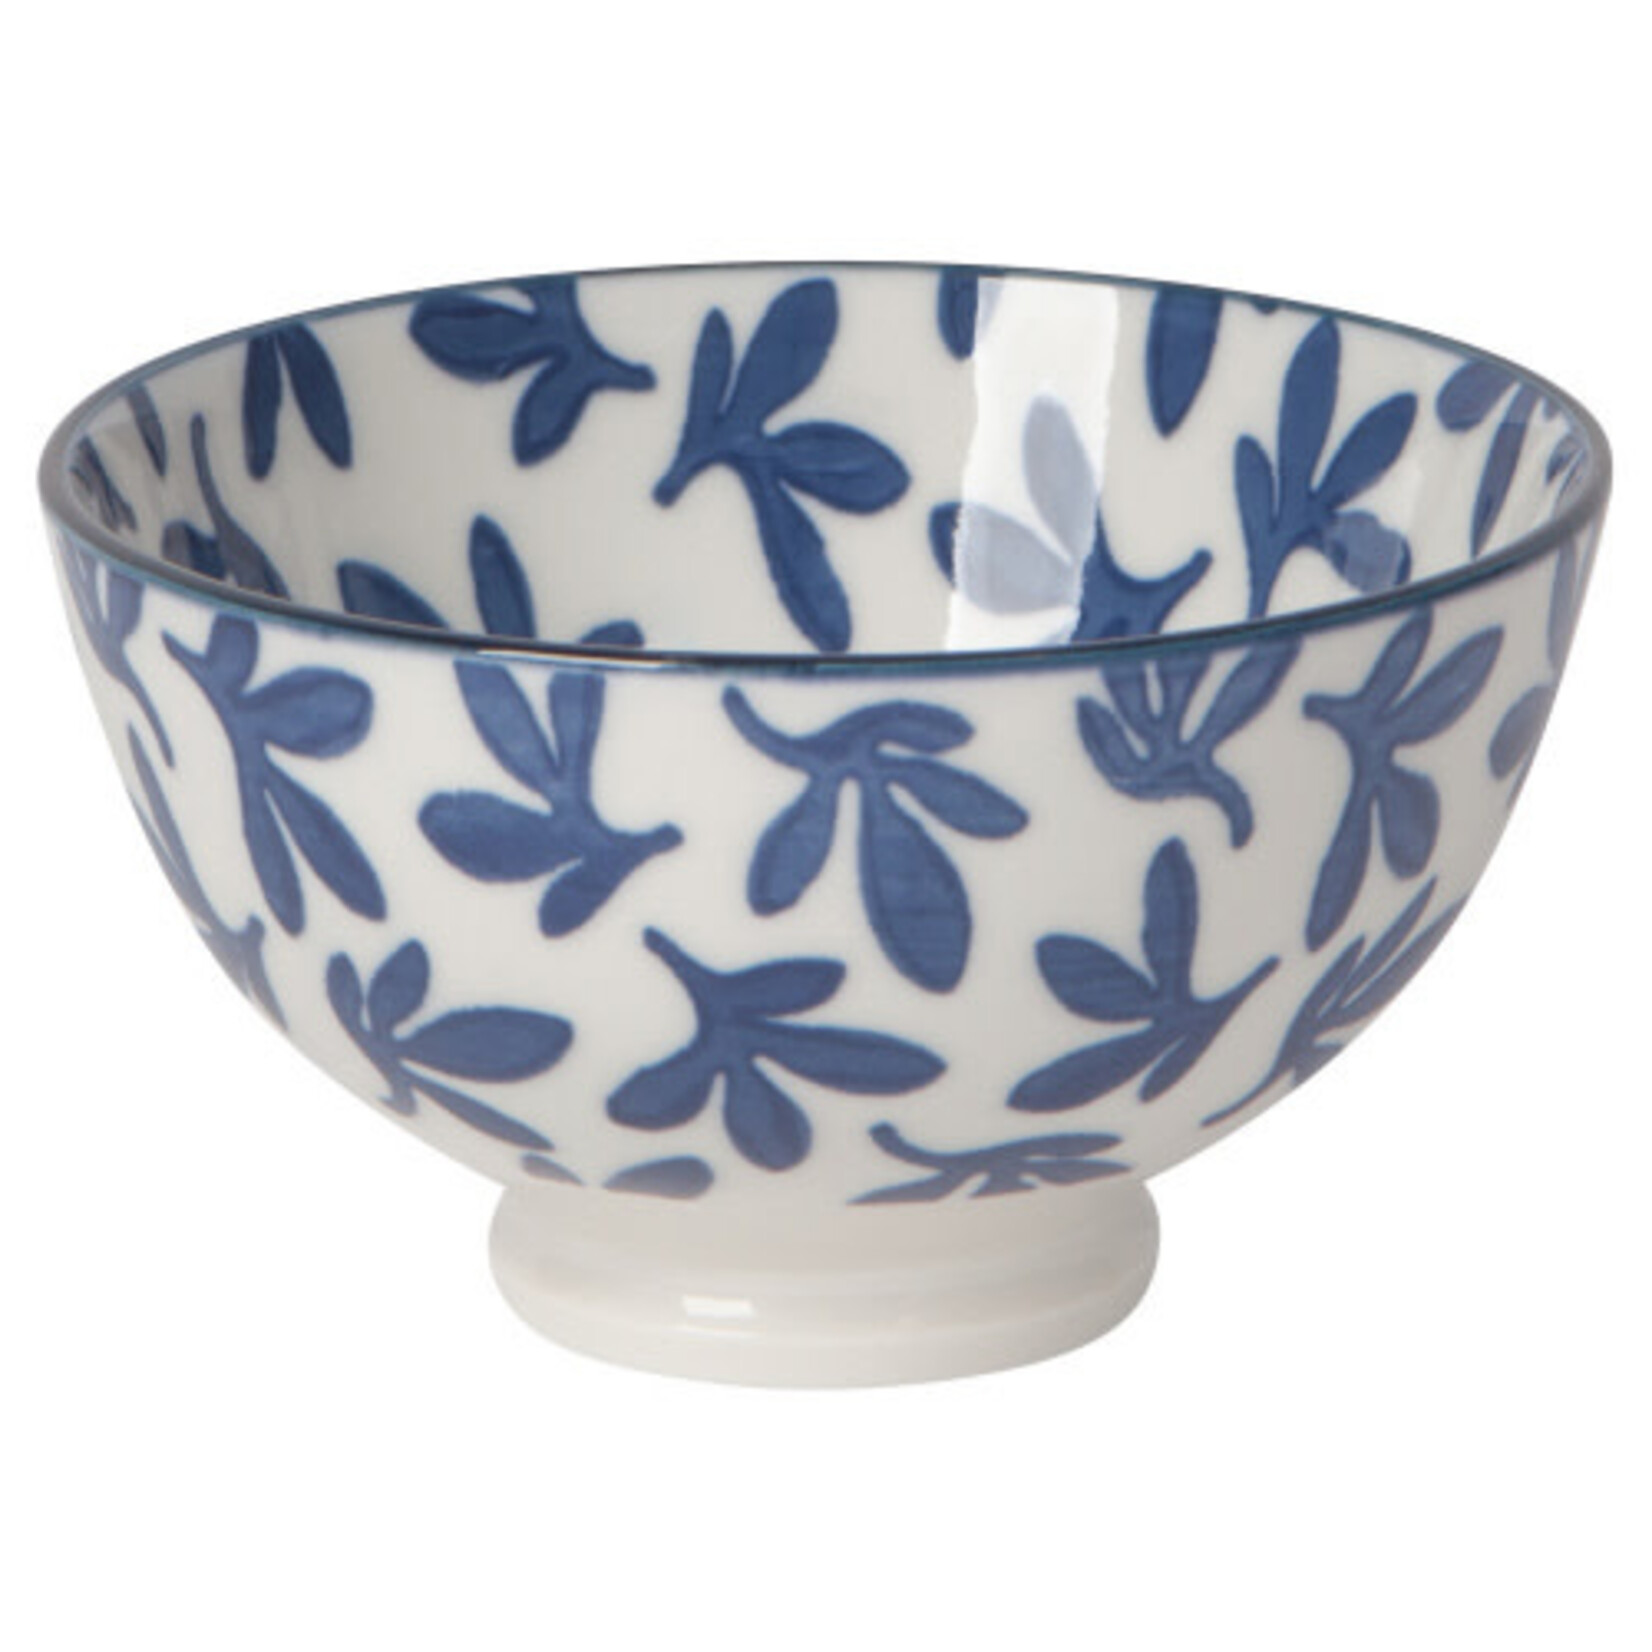 Blue Floral Bowl